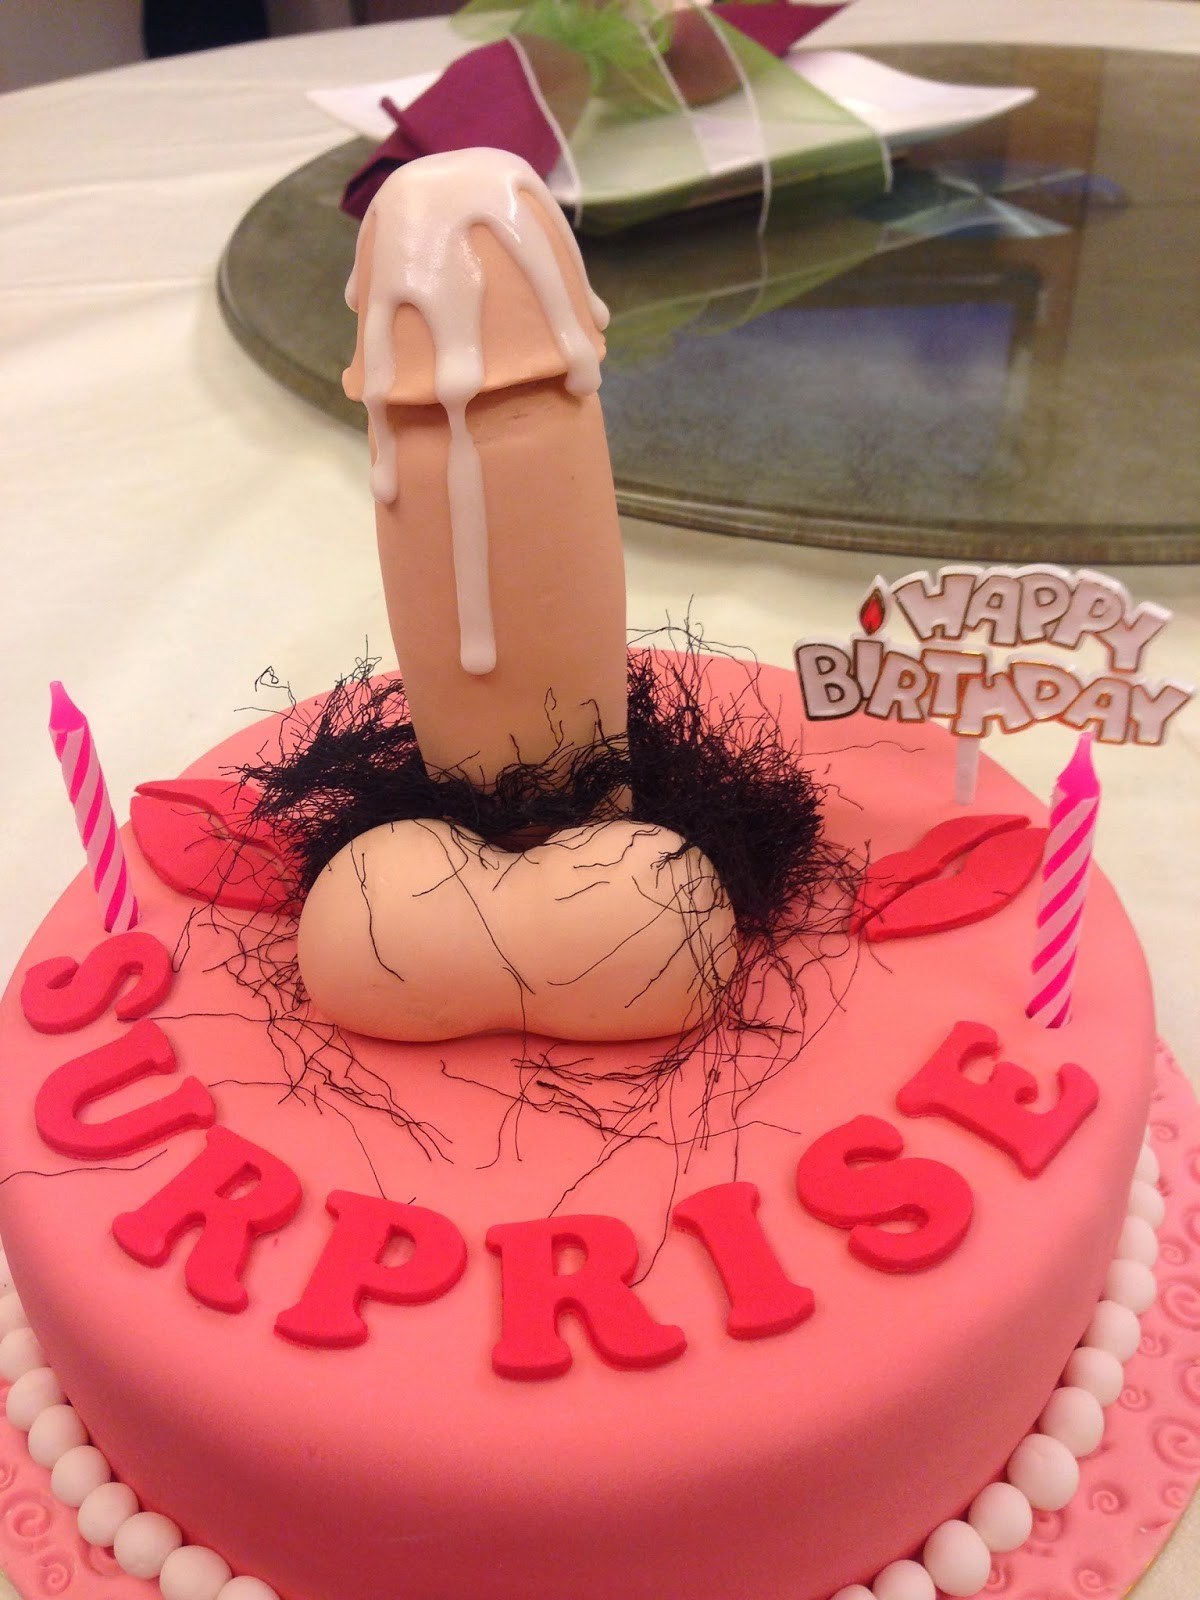 Happy birthday dick porn